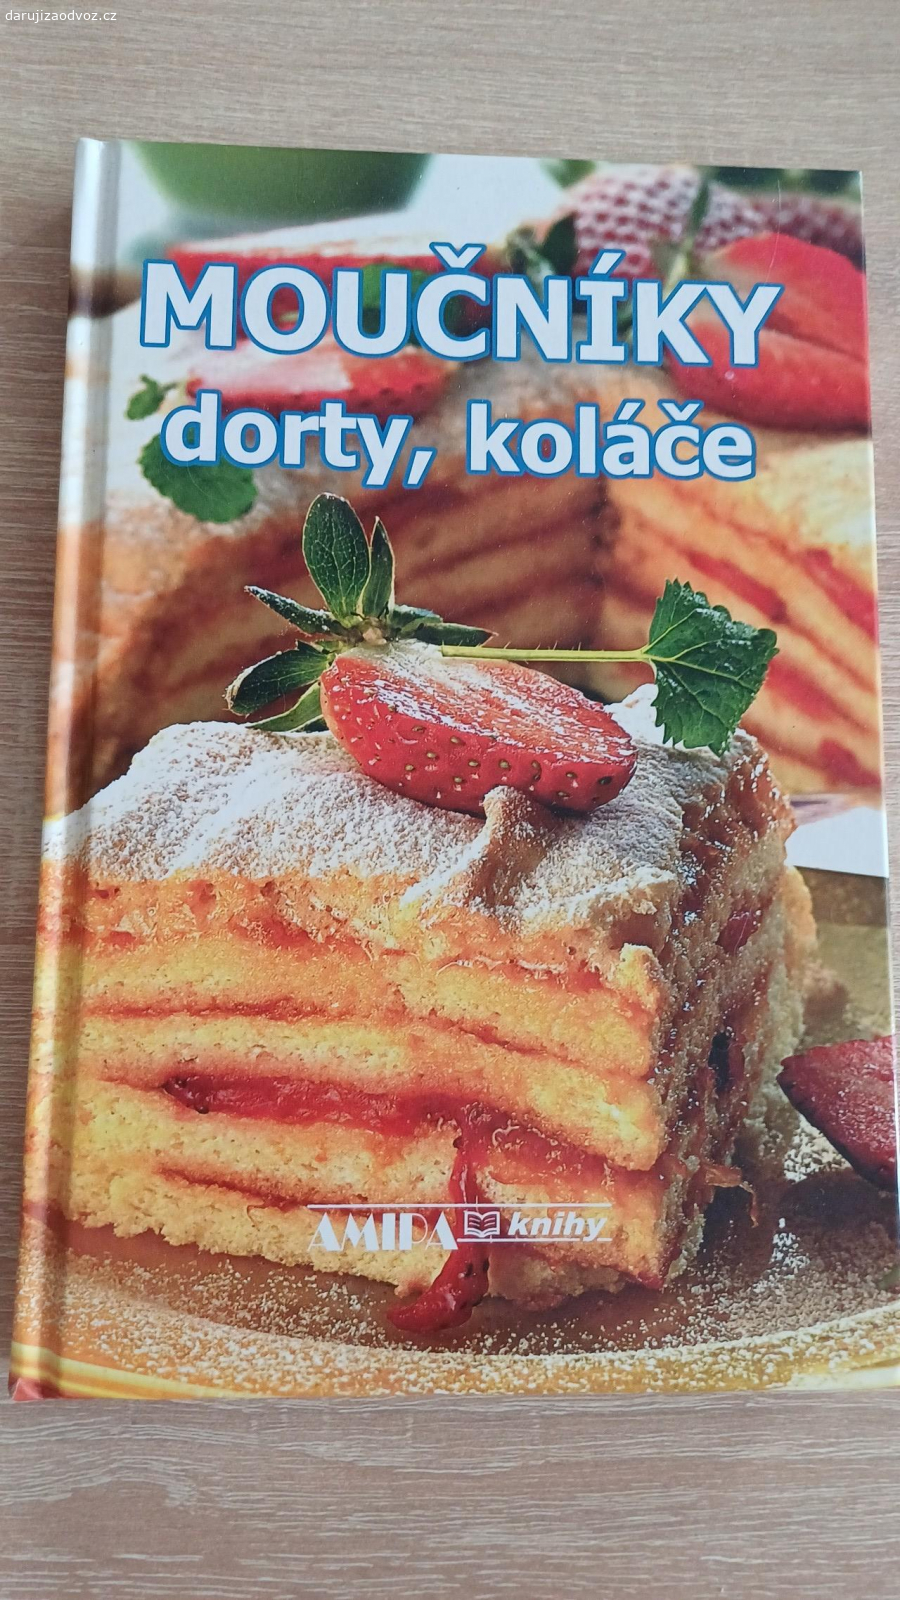 Daruji knihu moučníky, dorty. Kniha je nová, nebyla používána (nevhodný dárek). Recepty v knize jsou na české klasické moučníky.